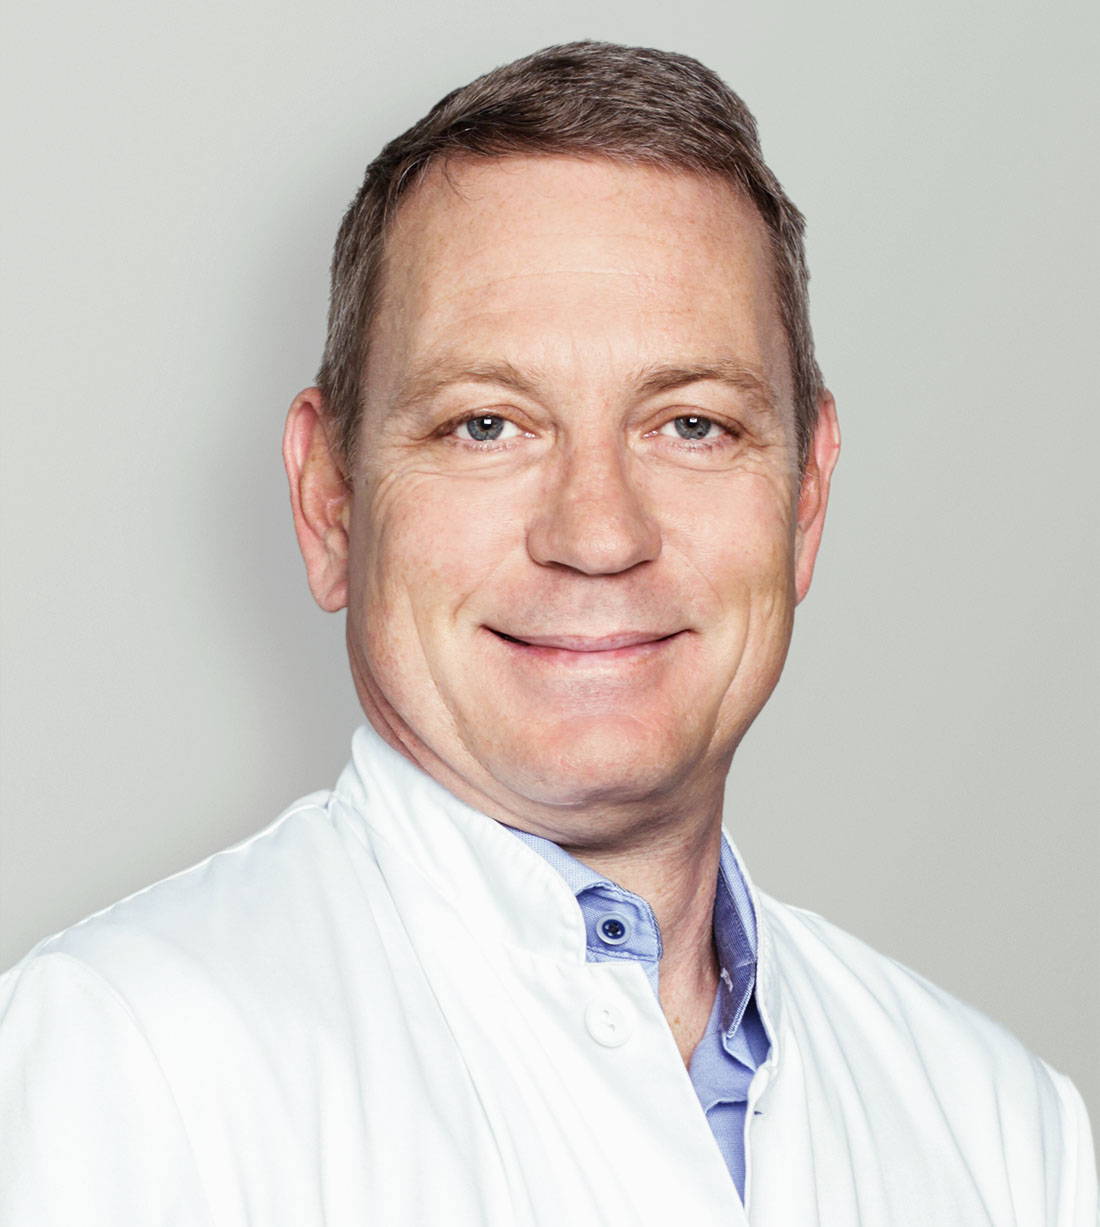 Portraitbild von Dr. med. Oliver Knutti, Inhaber der Neurochirurgie Knutti, Cham, Zug, Zürich